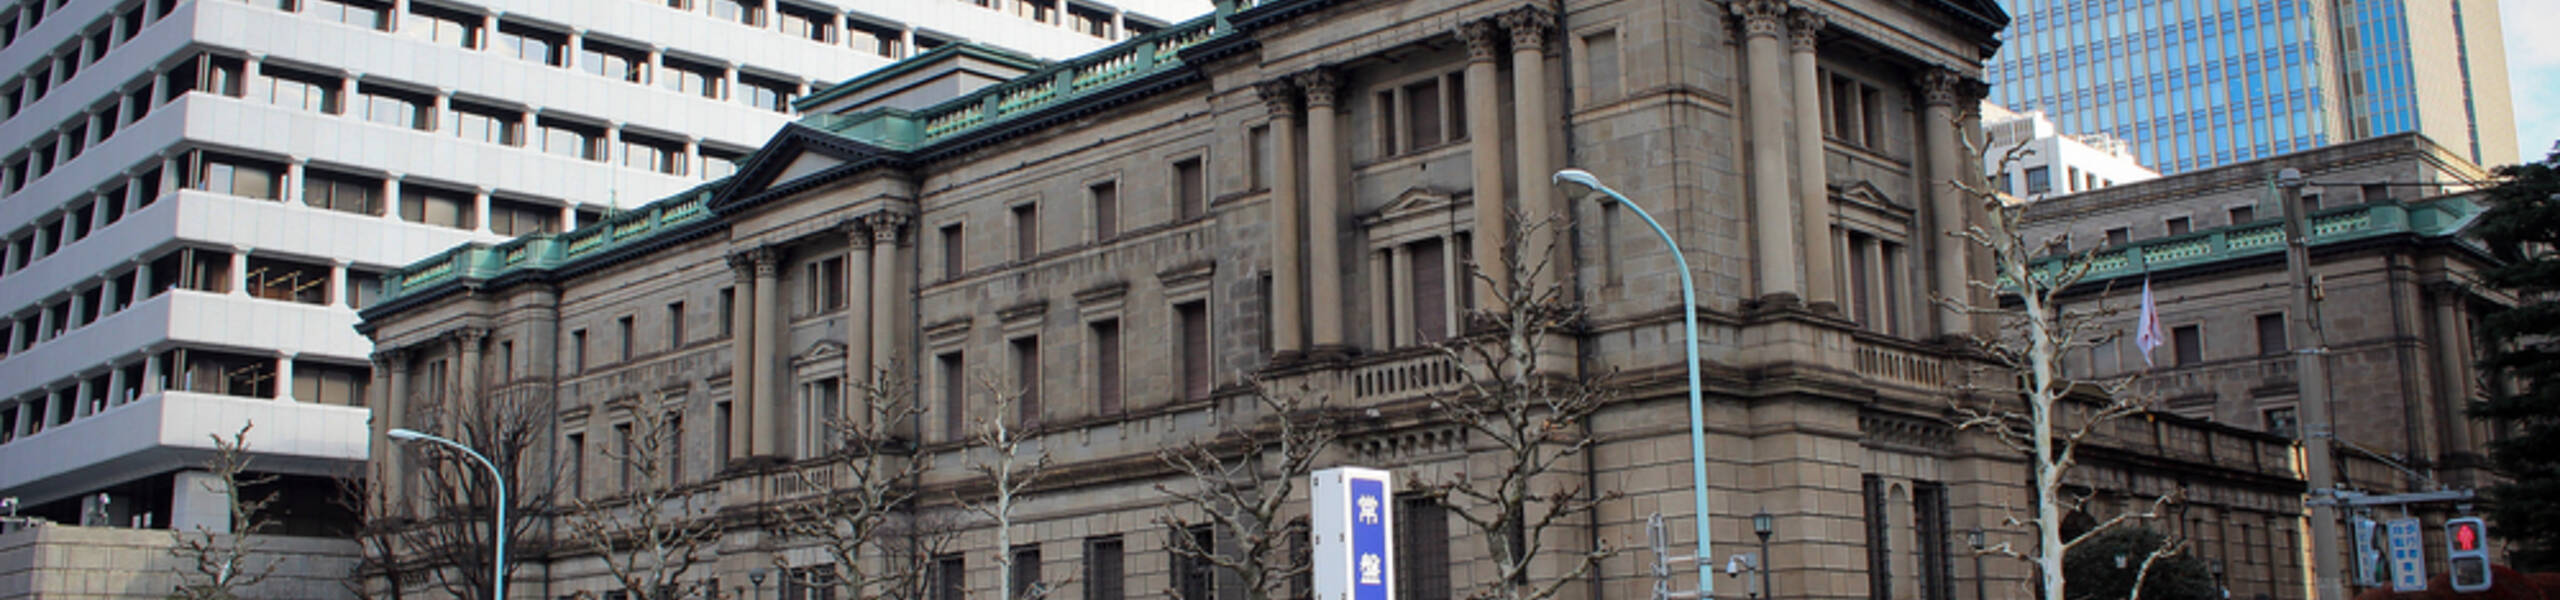 Monetary Policy Statement และ BOJ Press Conference ของญี่ปุ่น JPY อาจผันผวนระยะสั้น